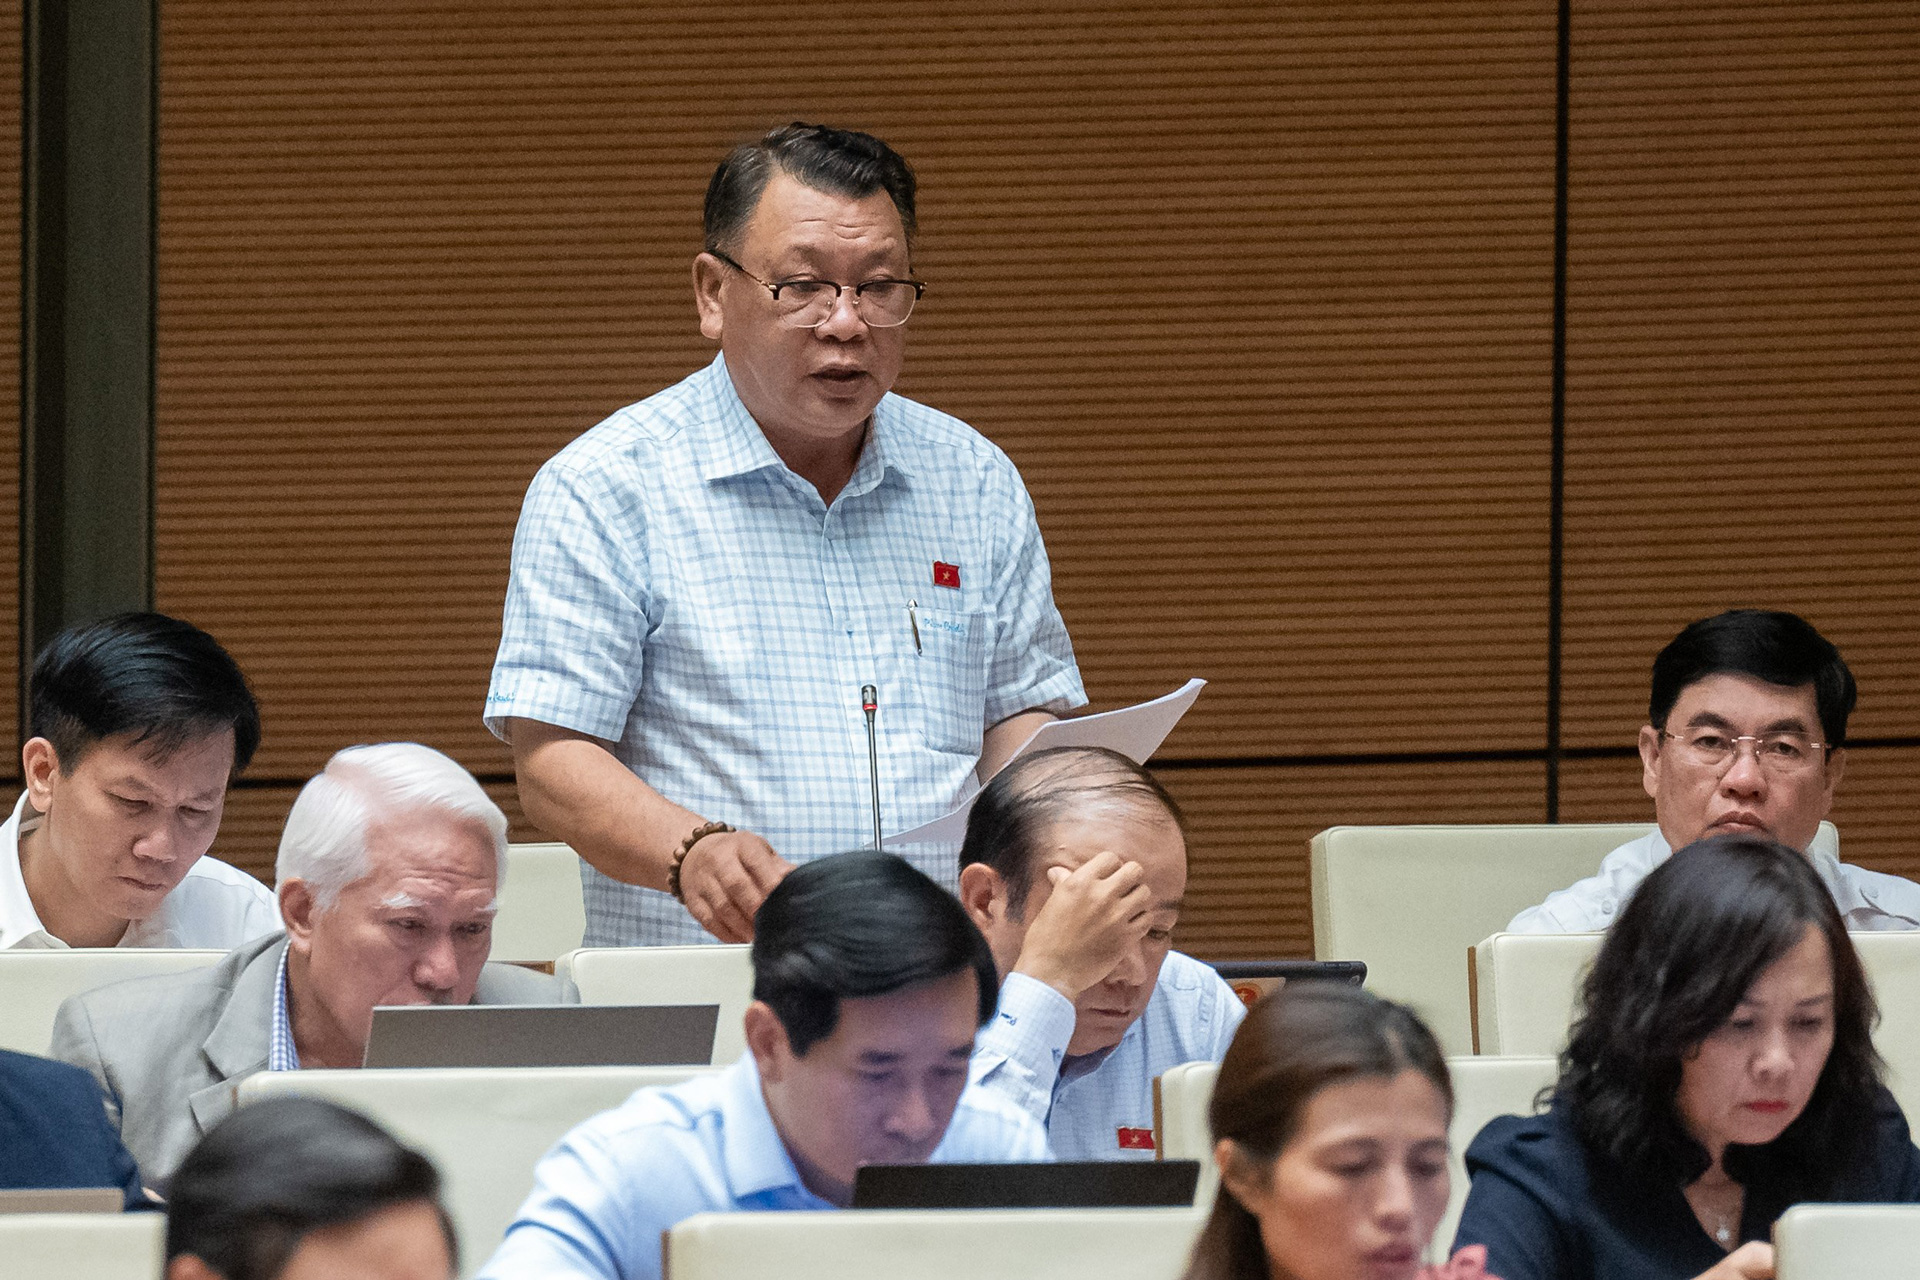 Trên cơ sở ý kiến cử tri Lâm Đồng, đại biểu Nguyễn Tạo đã góp ý về dự thảo 
Luật BHXH (sửa đổi) nhằm hướng đến bảo vệ quyền lợi người lao động